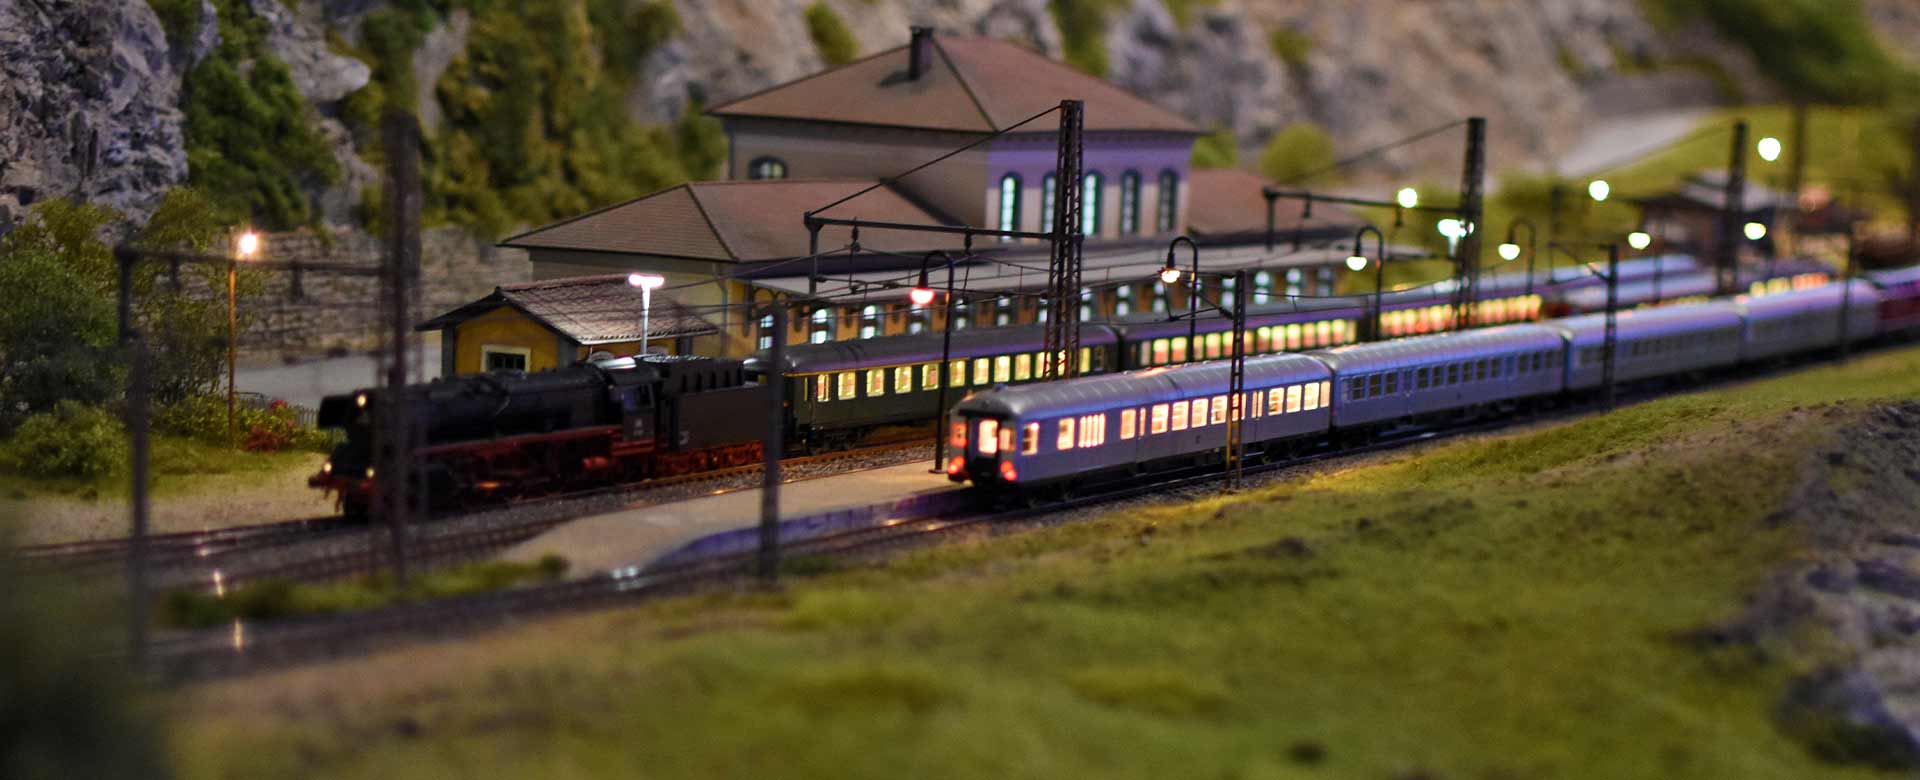 Modellino treno 